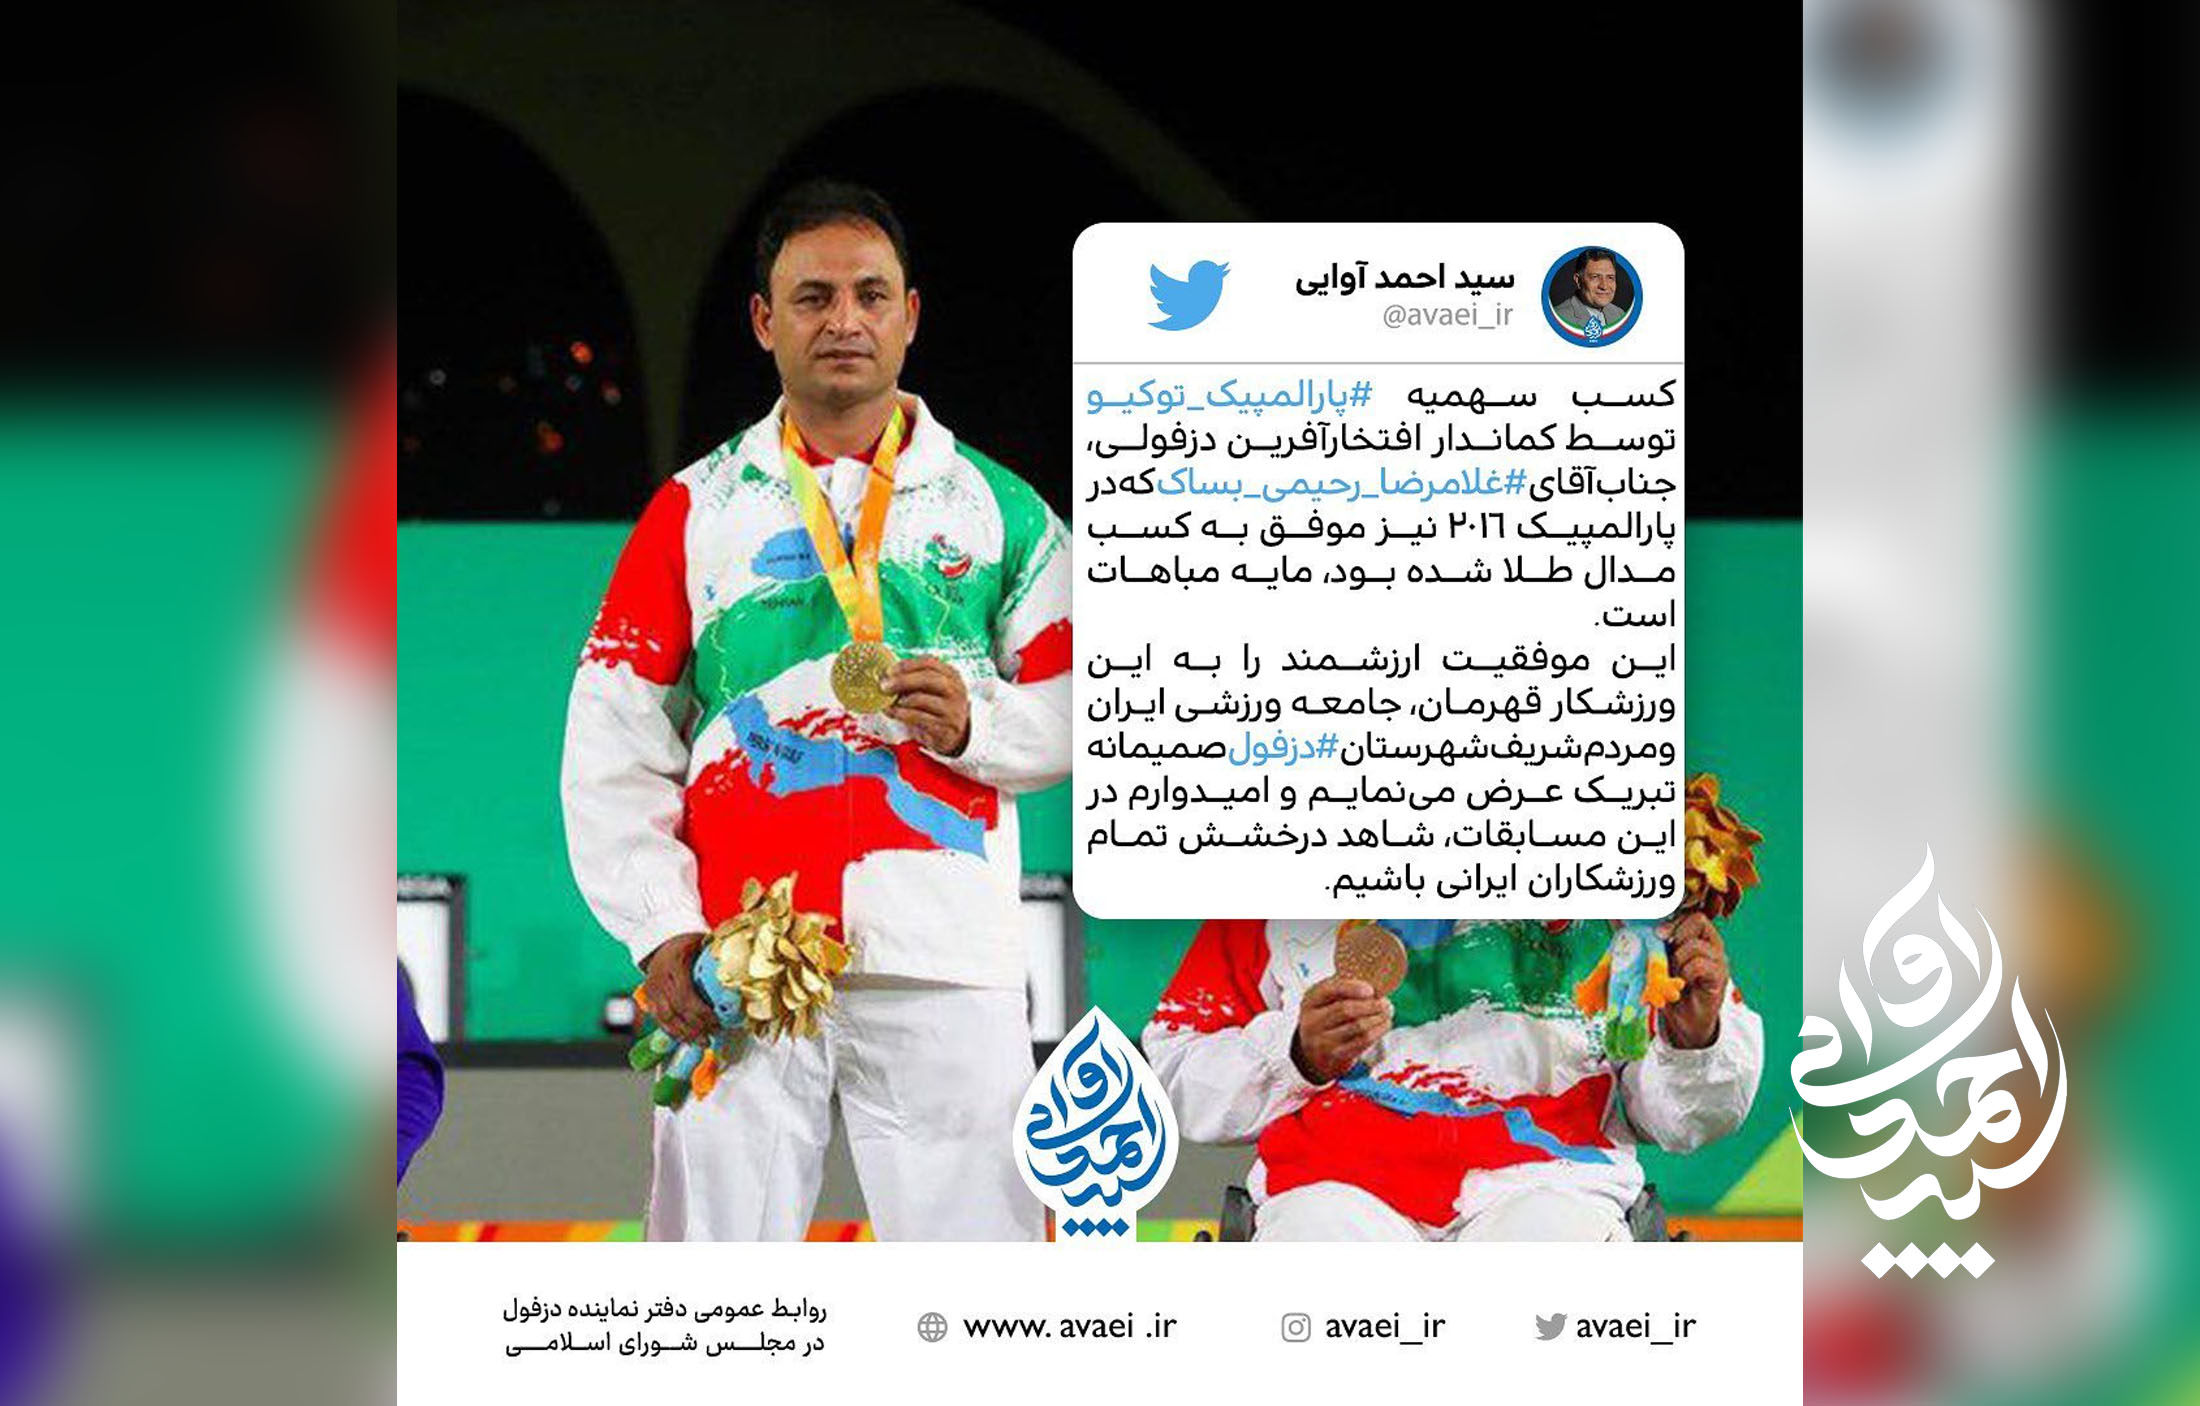 نماینده دزفول کسب سهمیه پارالمپیک را به غلامرضا رحیمی بساک قهرمان دزفولی تبریک گفت